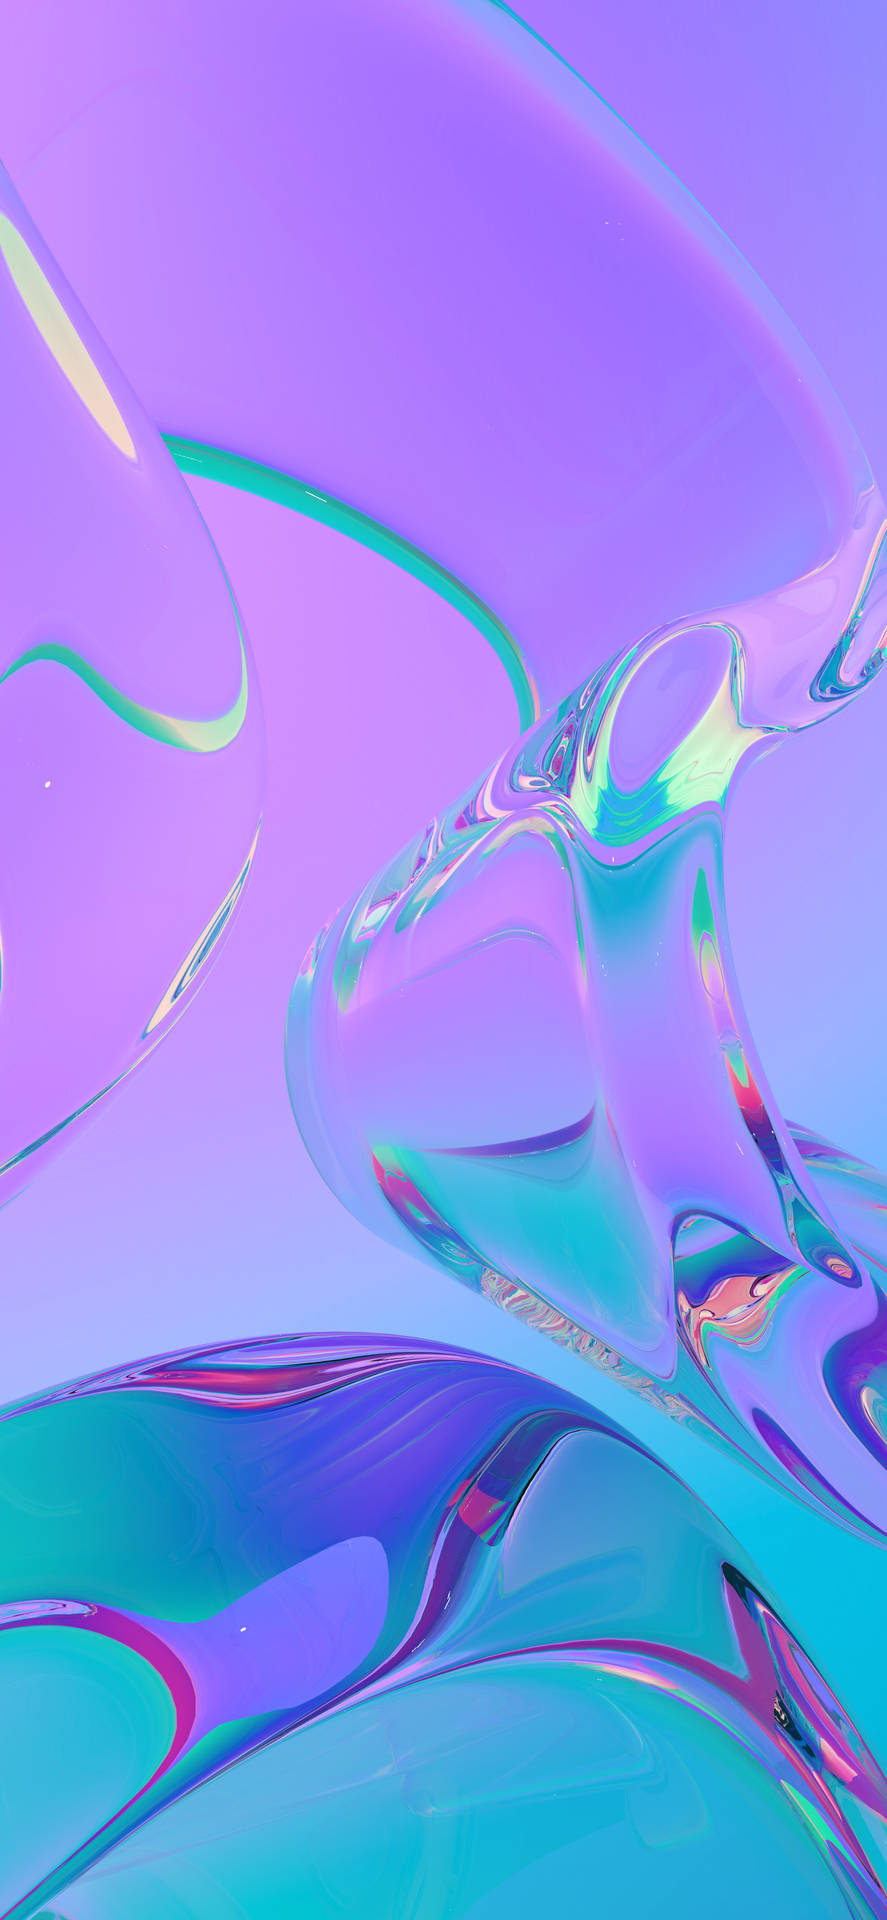 Close-up Violet Liquid Surface Mobile 3d